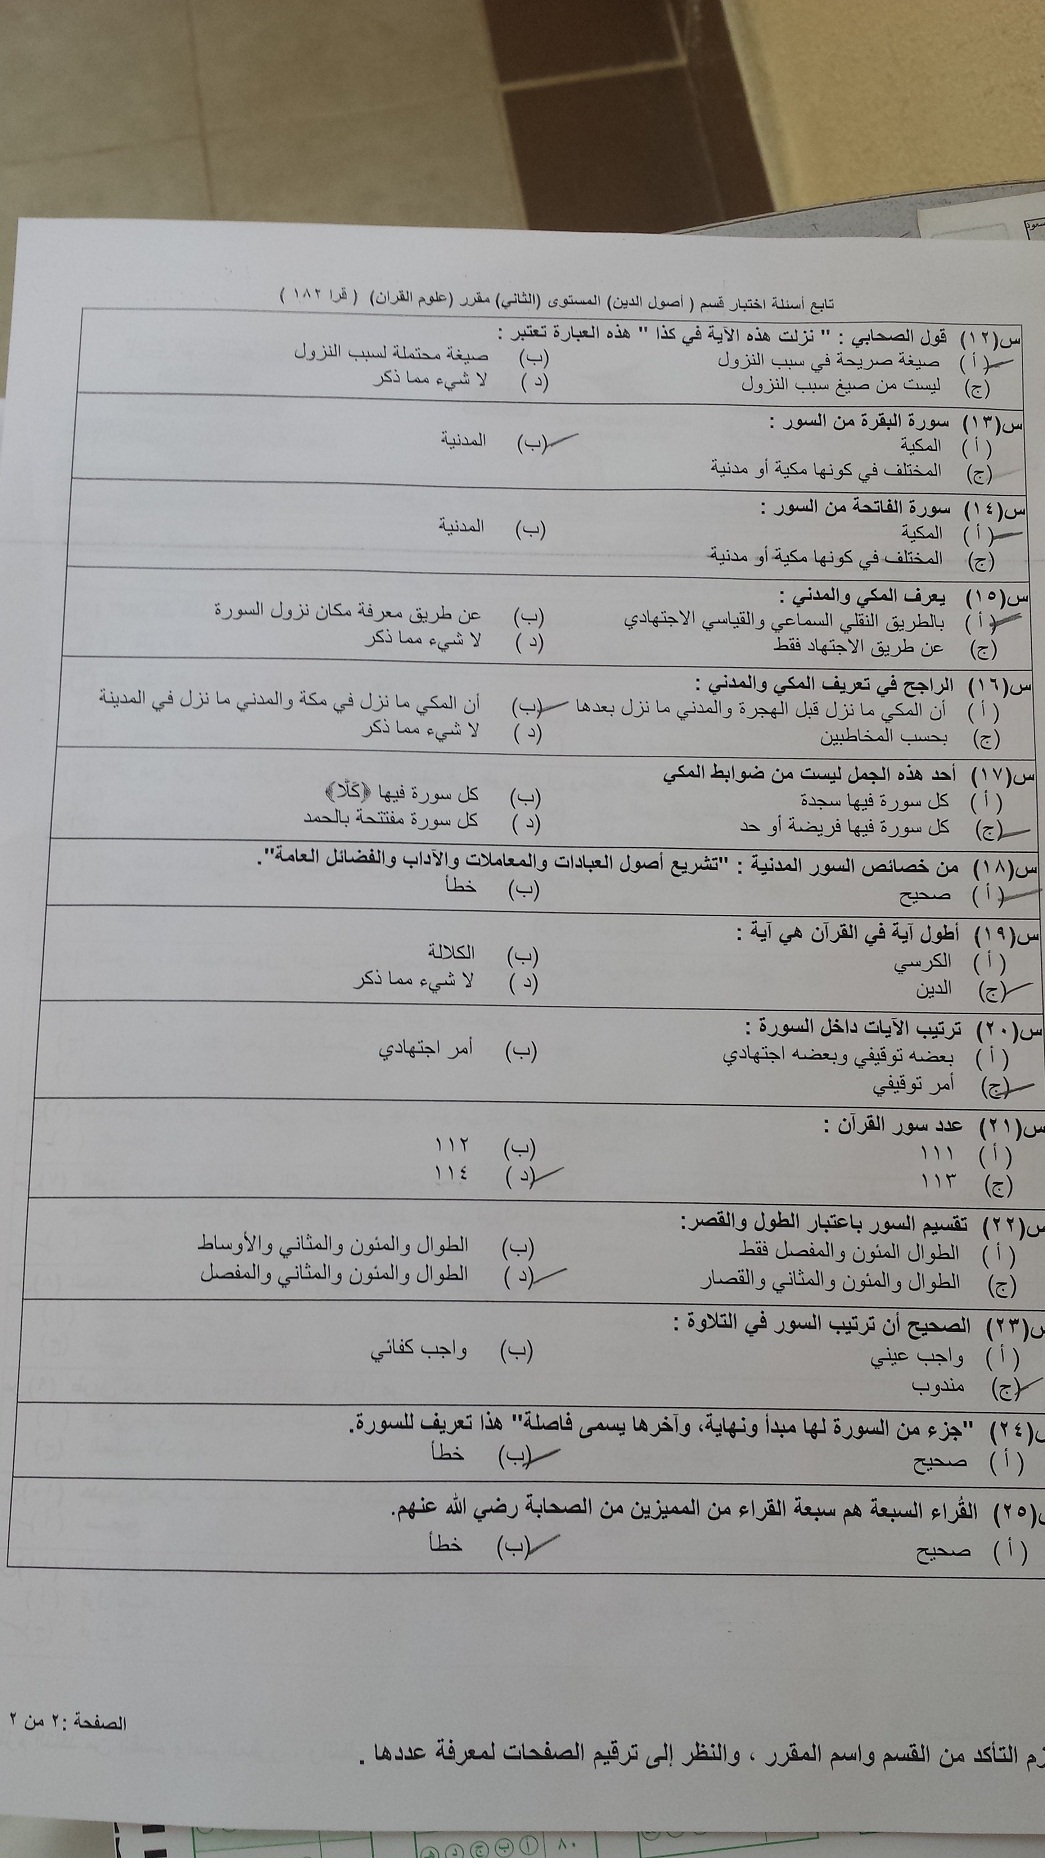 اسئلة اختبار علوم القرآن قرا 182 انتساب الفصل الدراسي الأول 1436هـ